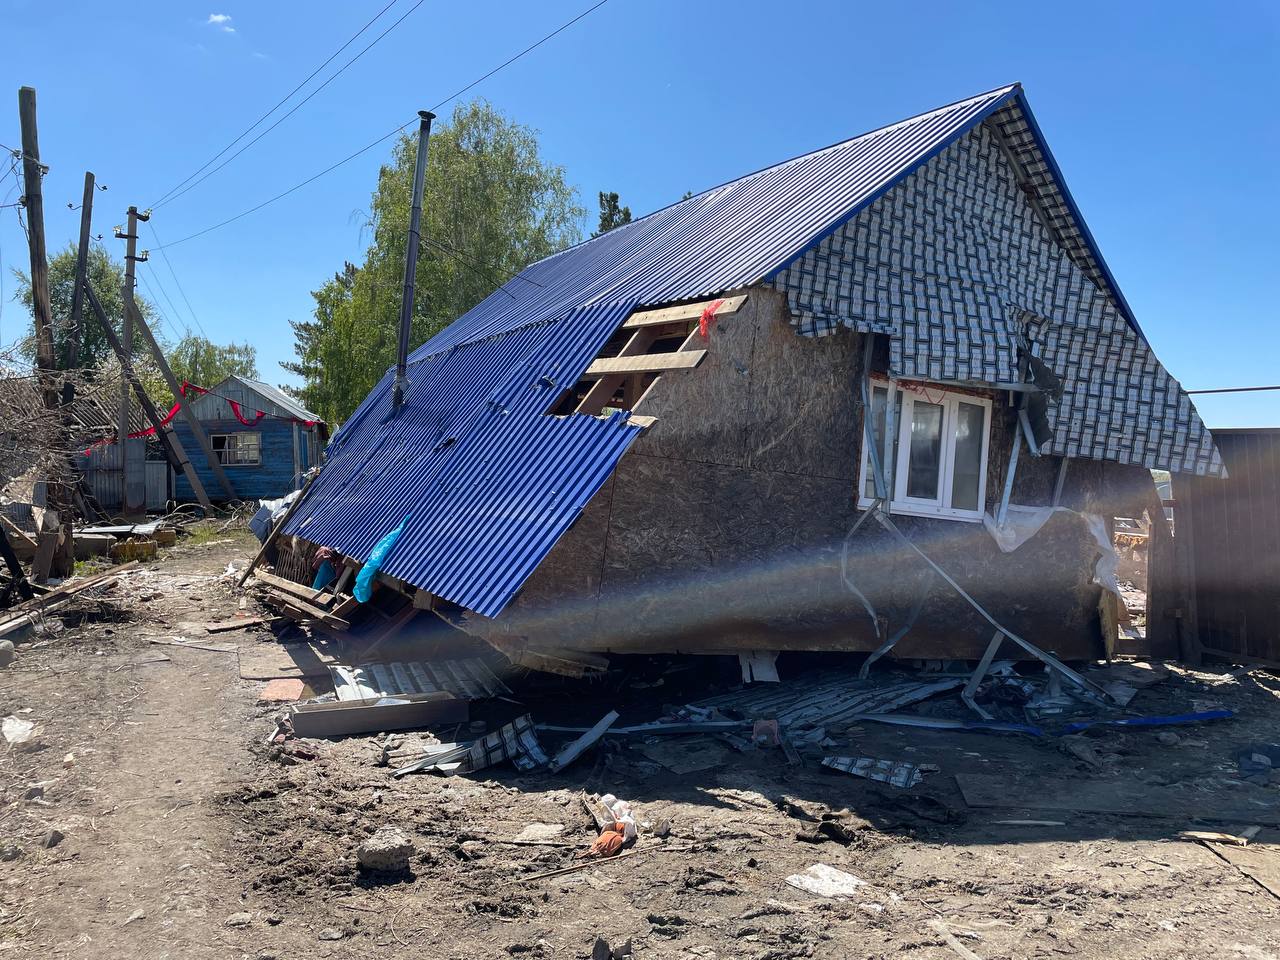 Разруха и хаос: дачники Петропавловска в шоке после наводнения